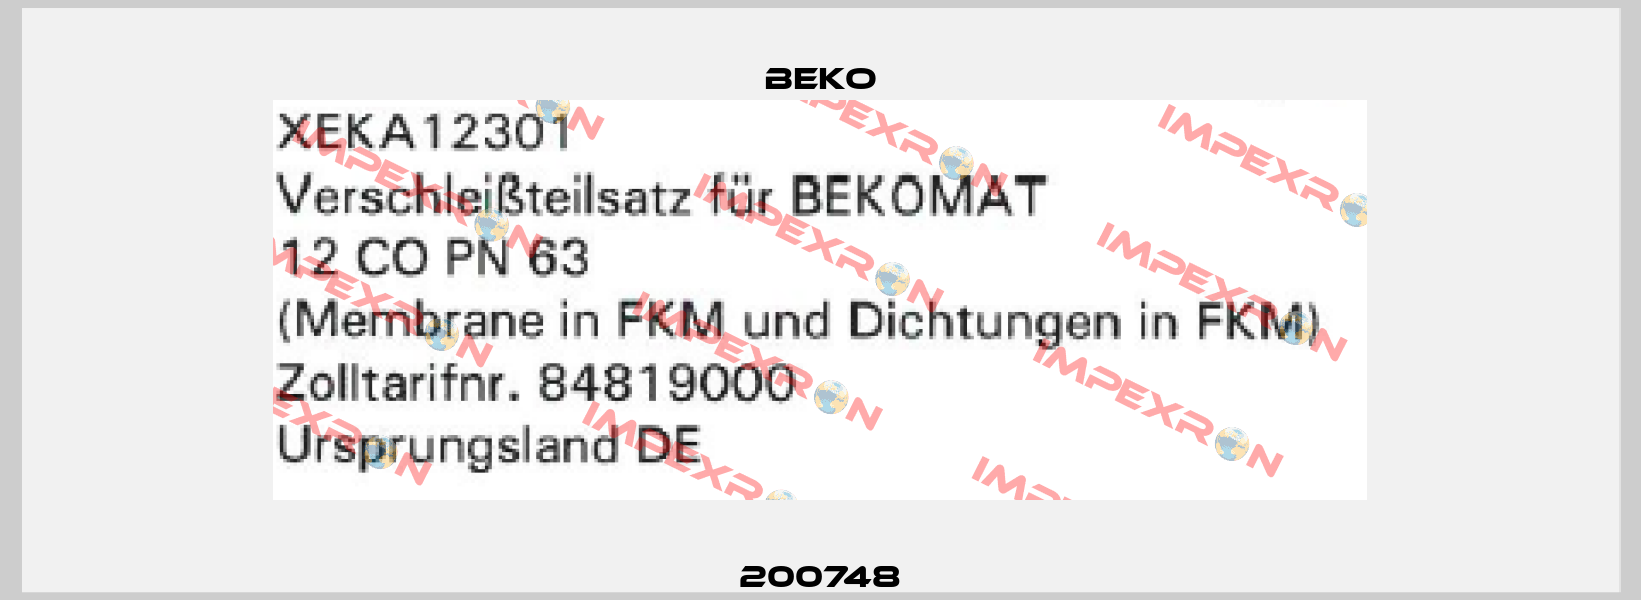 200748 Beko